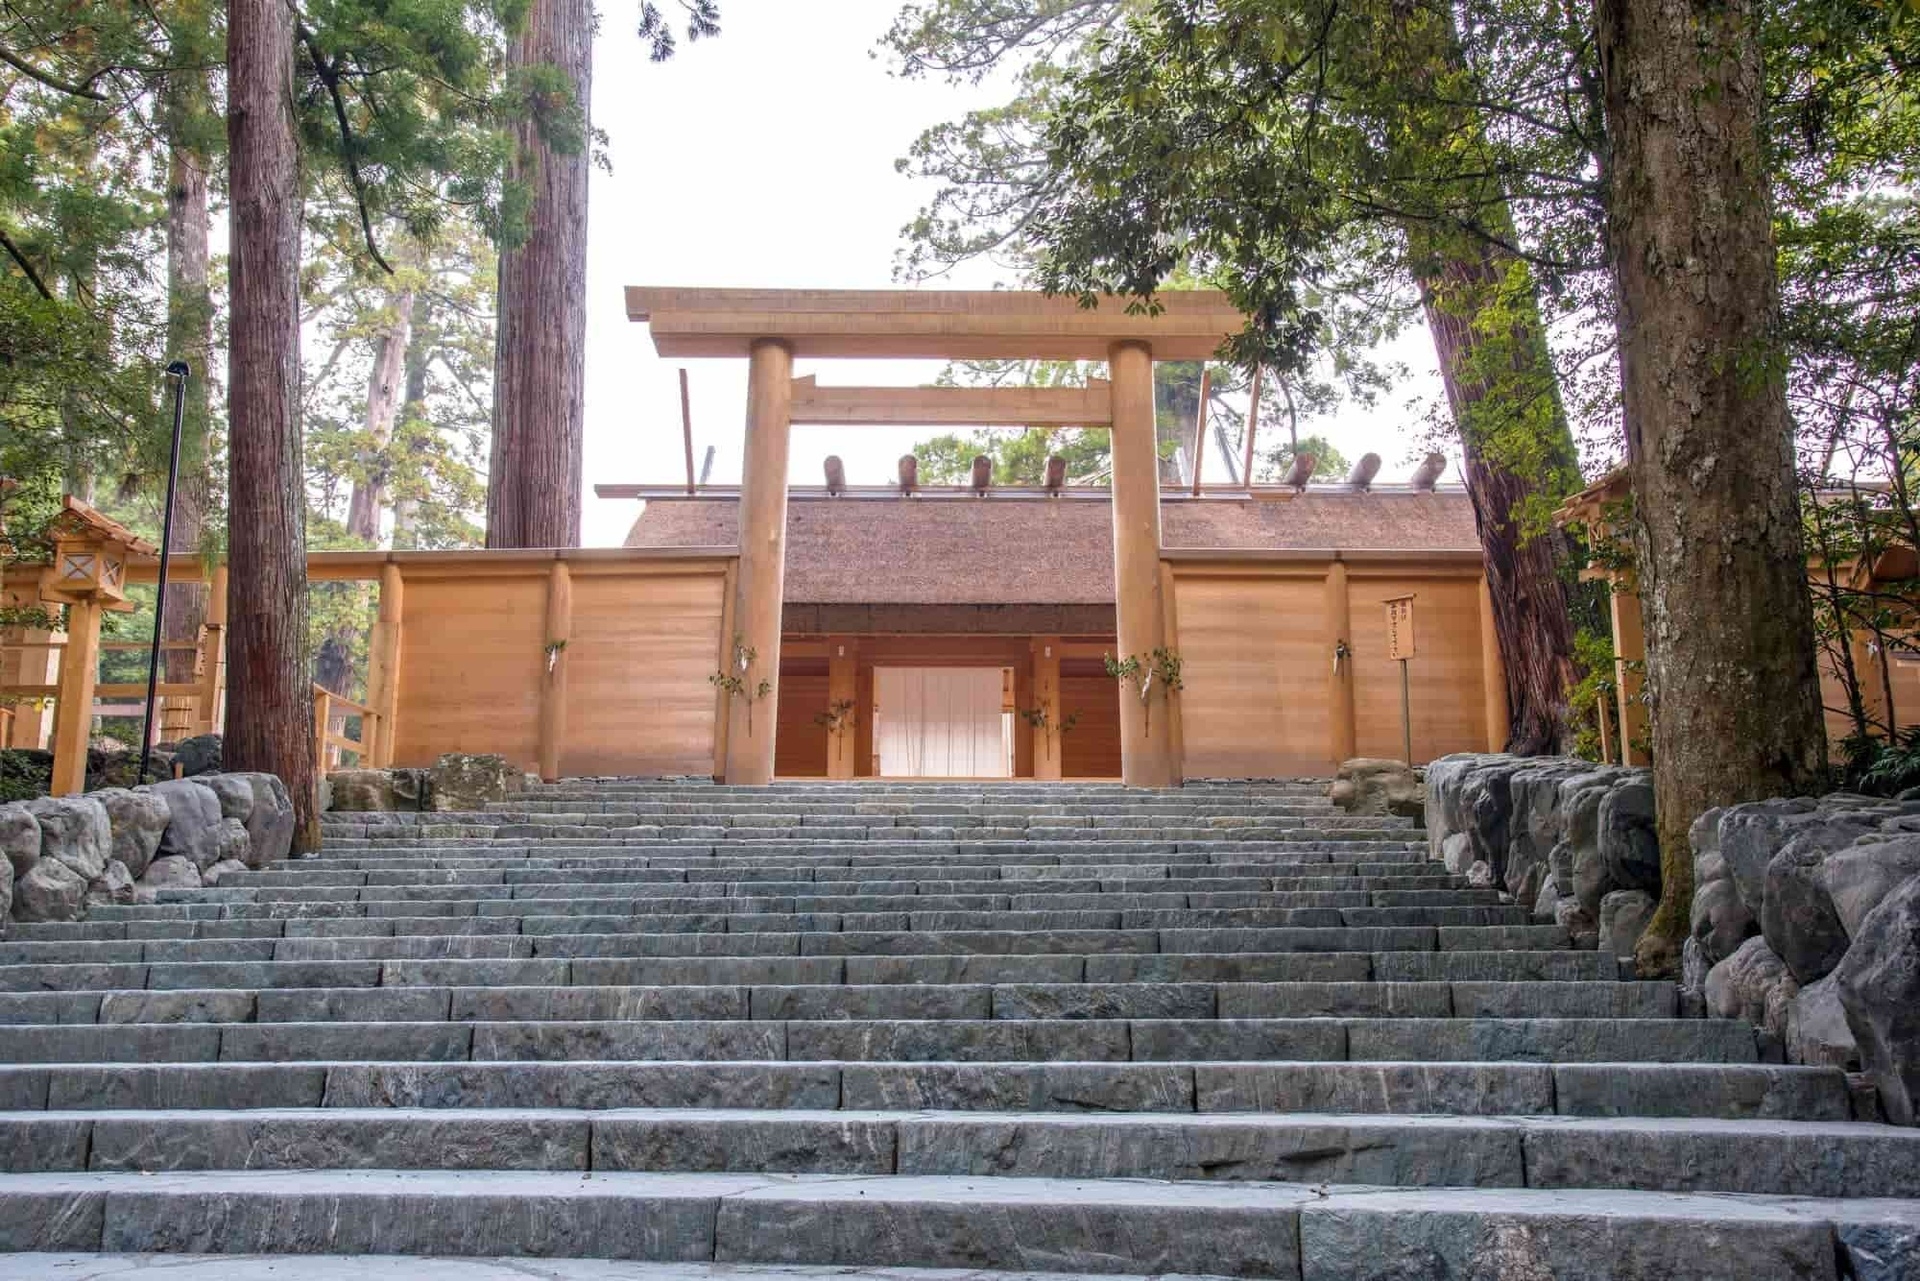 Ngôi đền Nhật cứ 20 năm được dỡ ra xây lại một lần-6